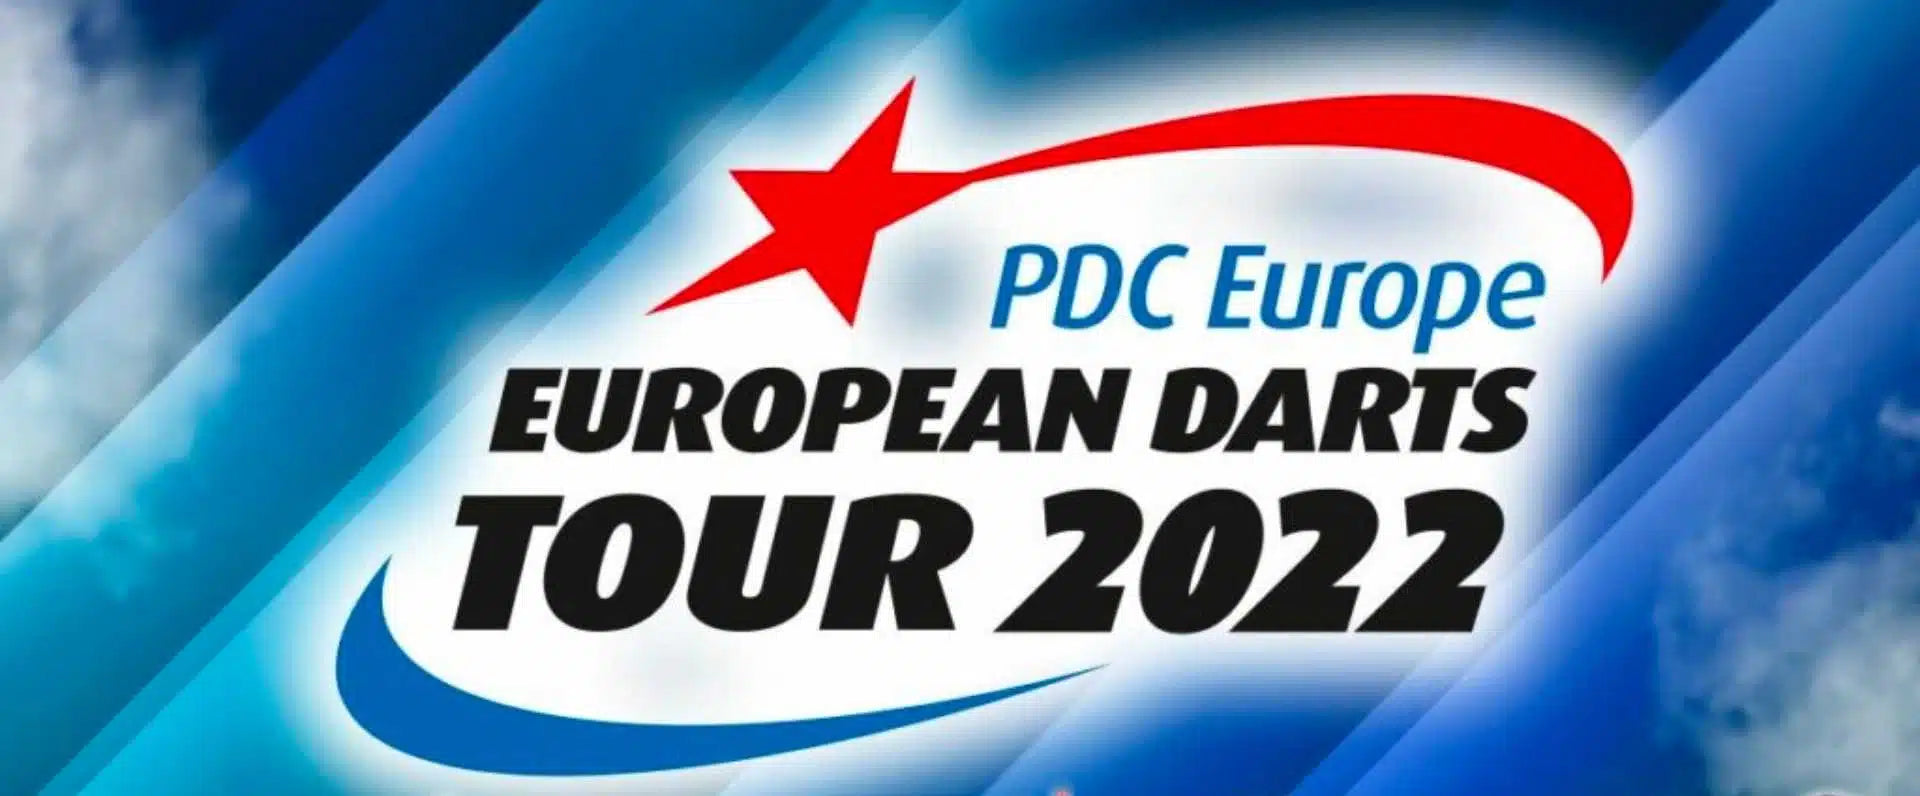 PDC Europe and European Darts Tour leicht und schnell erklärt